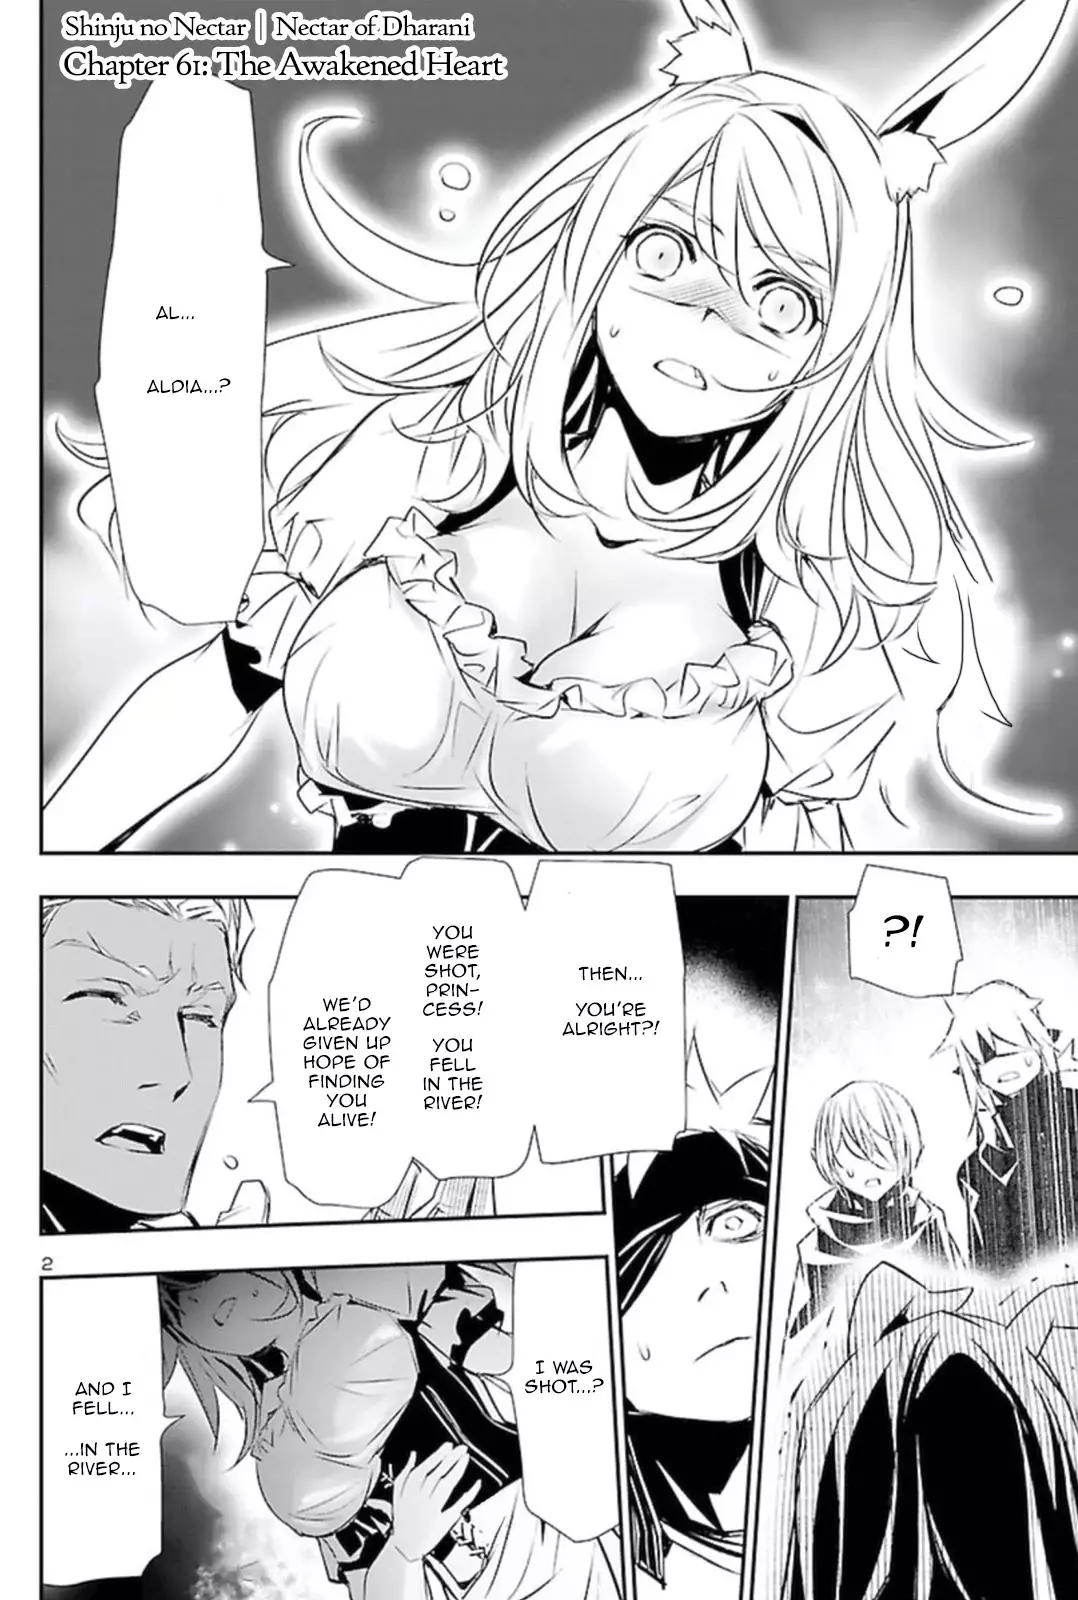 Shinju no Nectar - 61 page 1-3b47e962